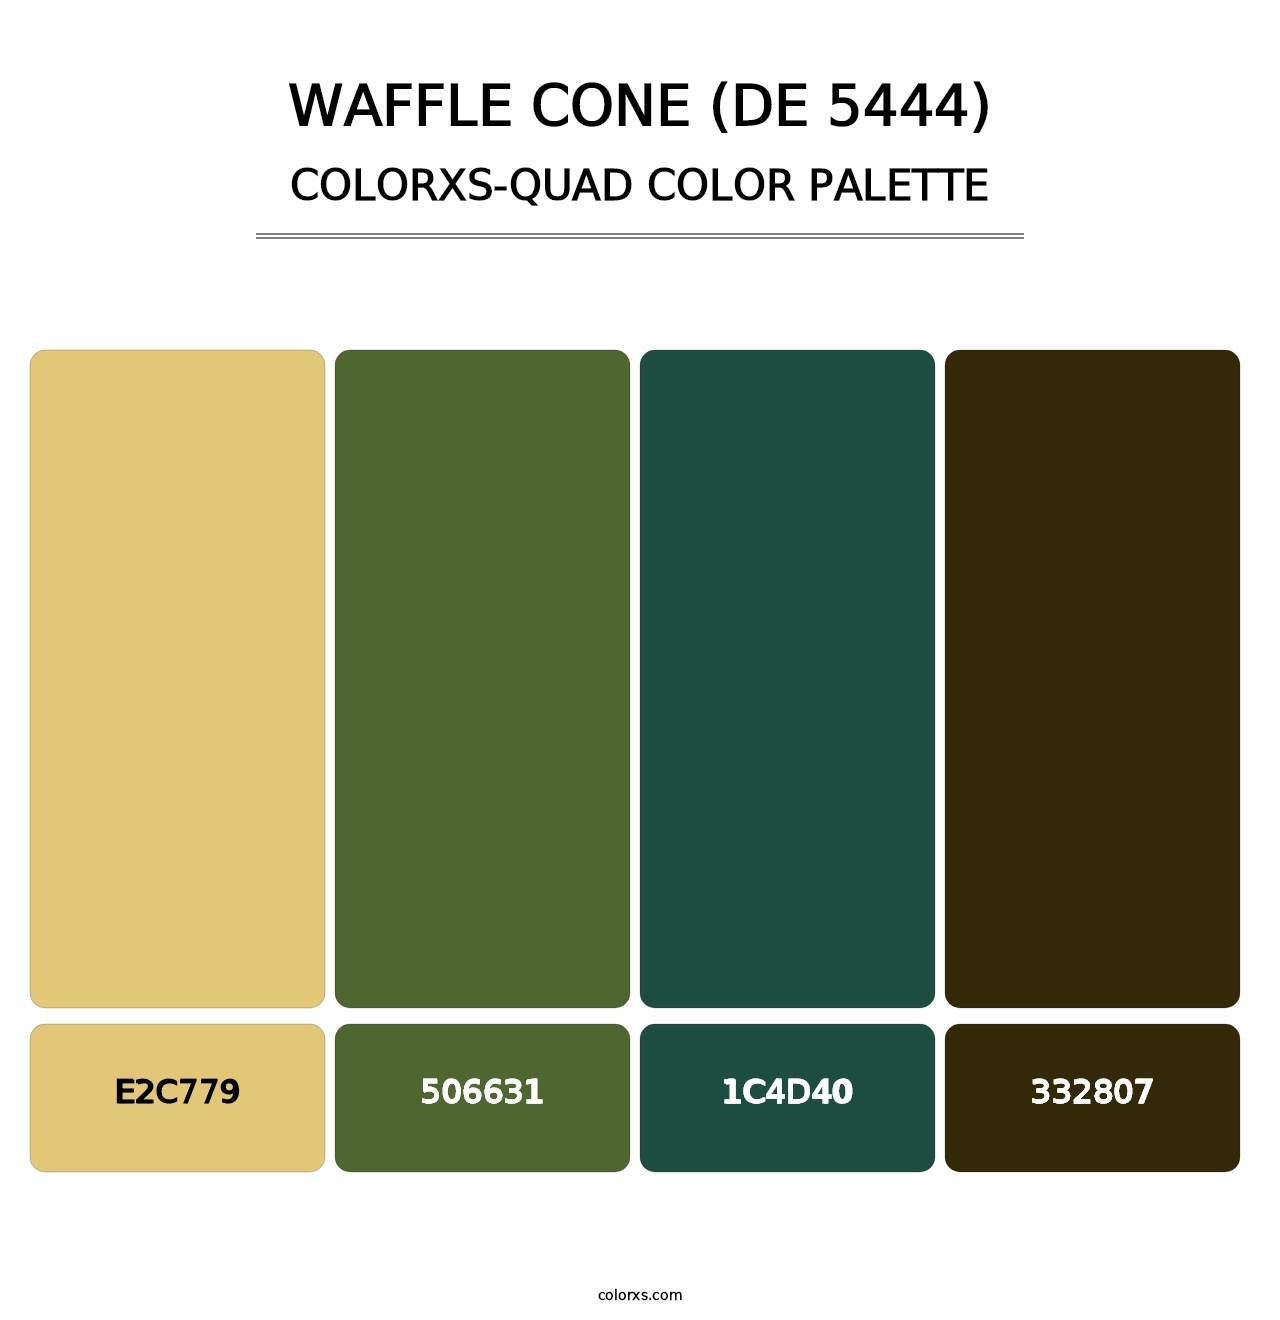 Waffle Cone (DE 5444) - Colorxs Quad Palette